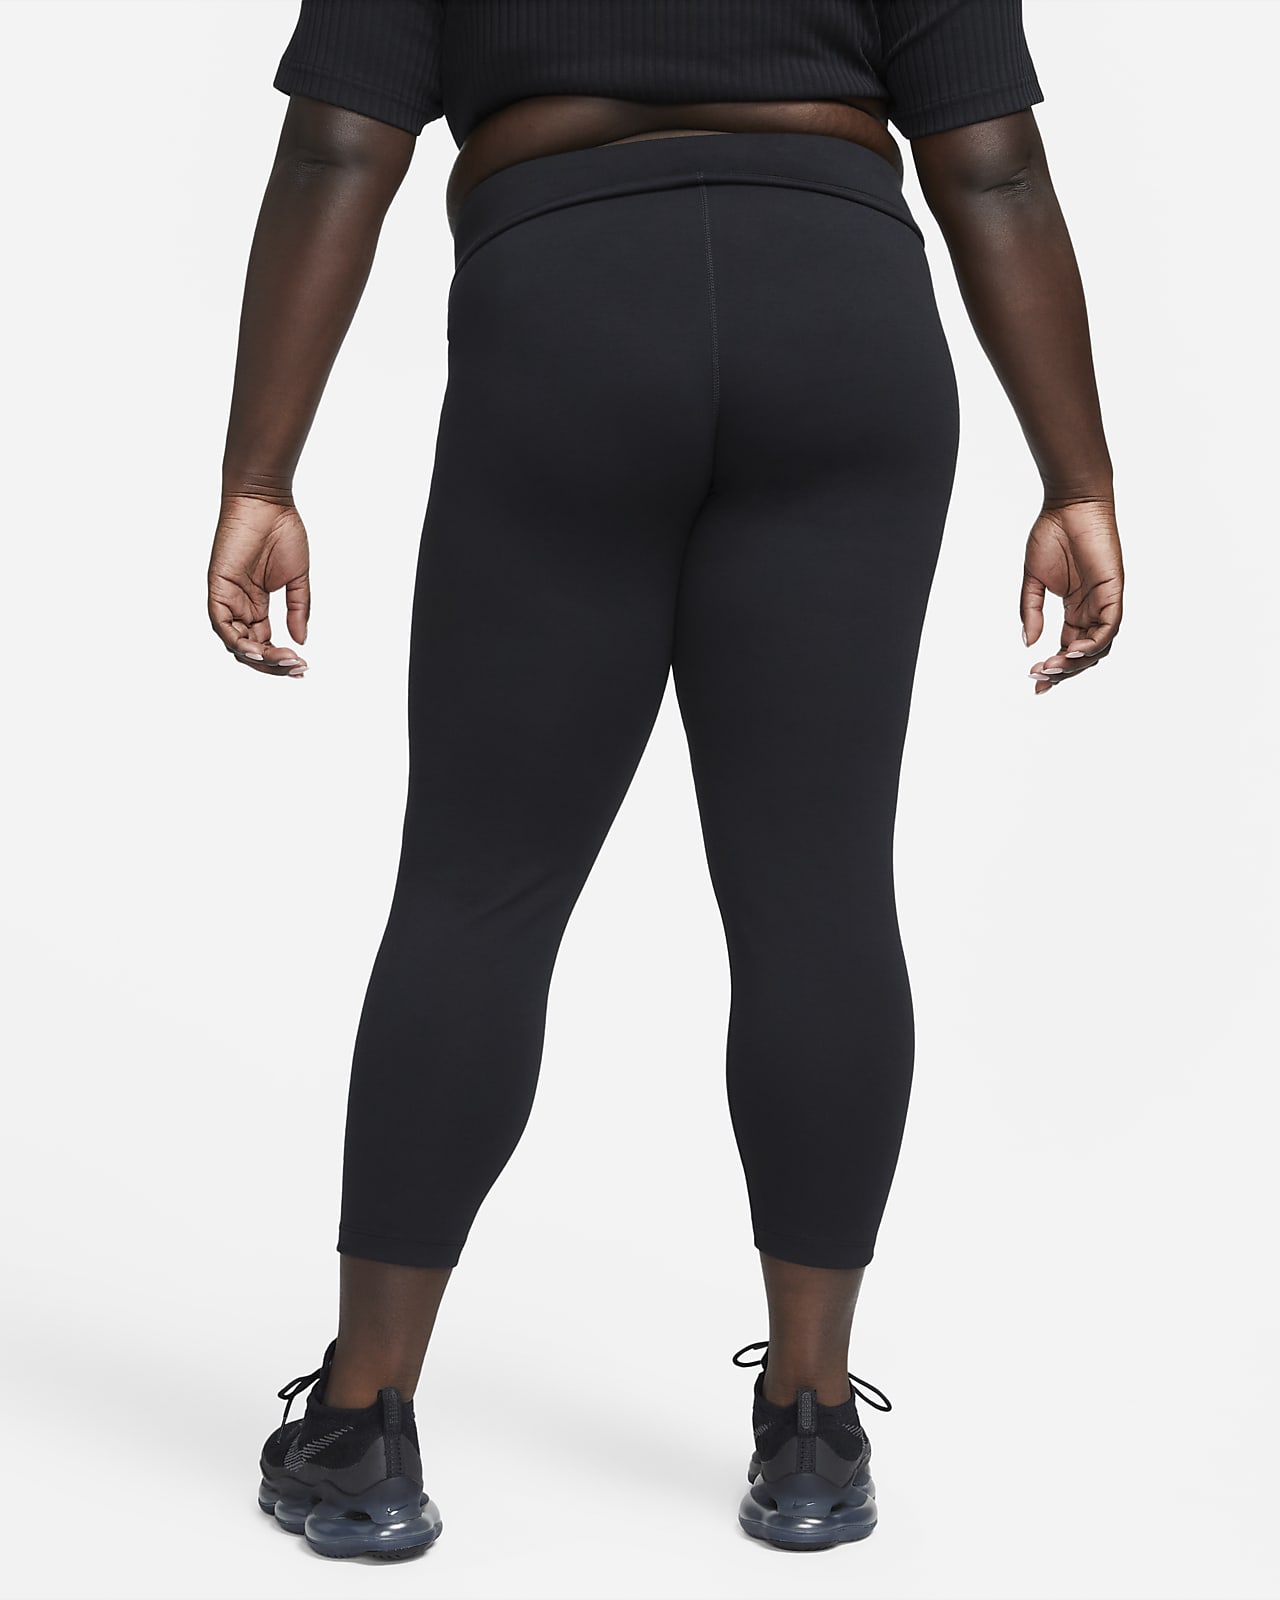 Nike Sportswear Classics Women's Leggings (Plus Size). Nike